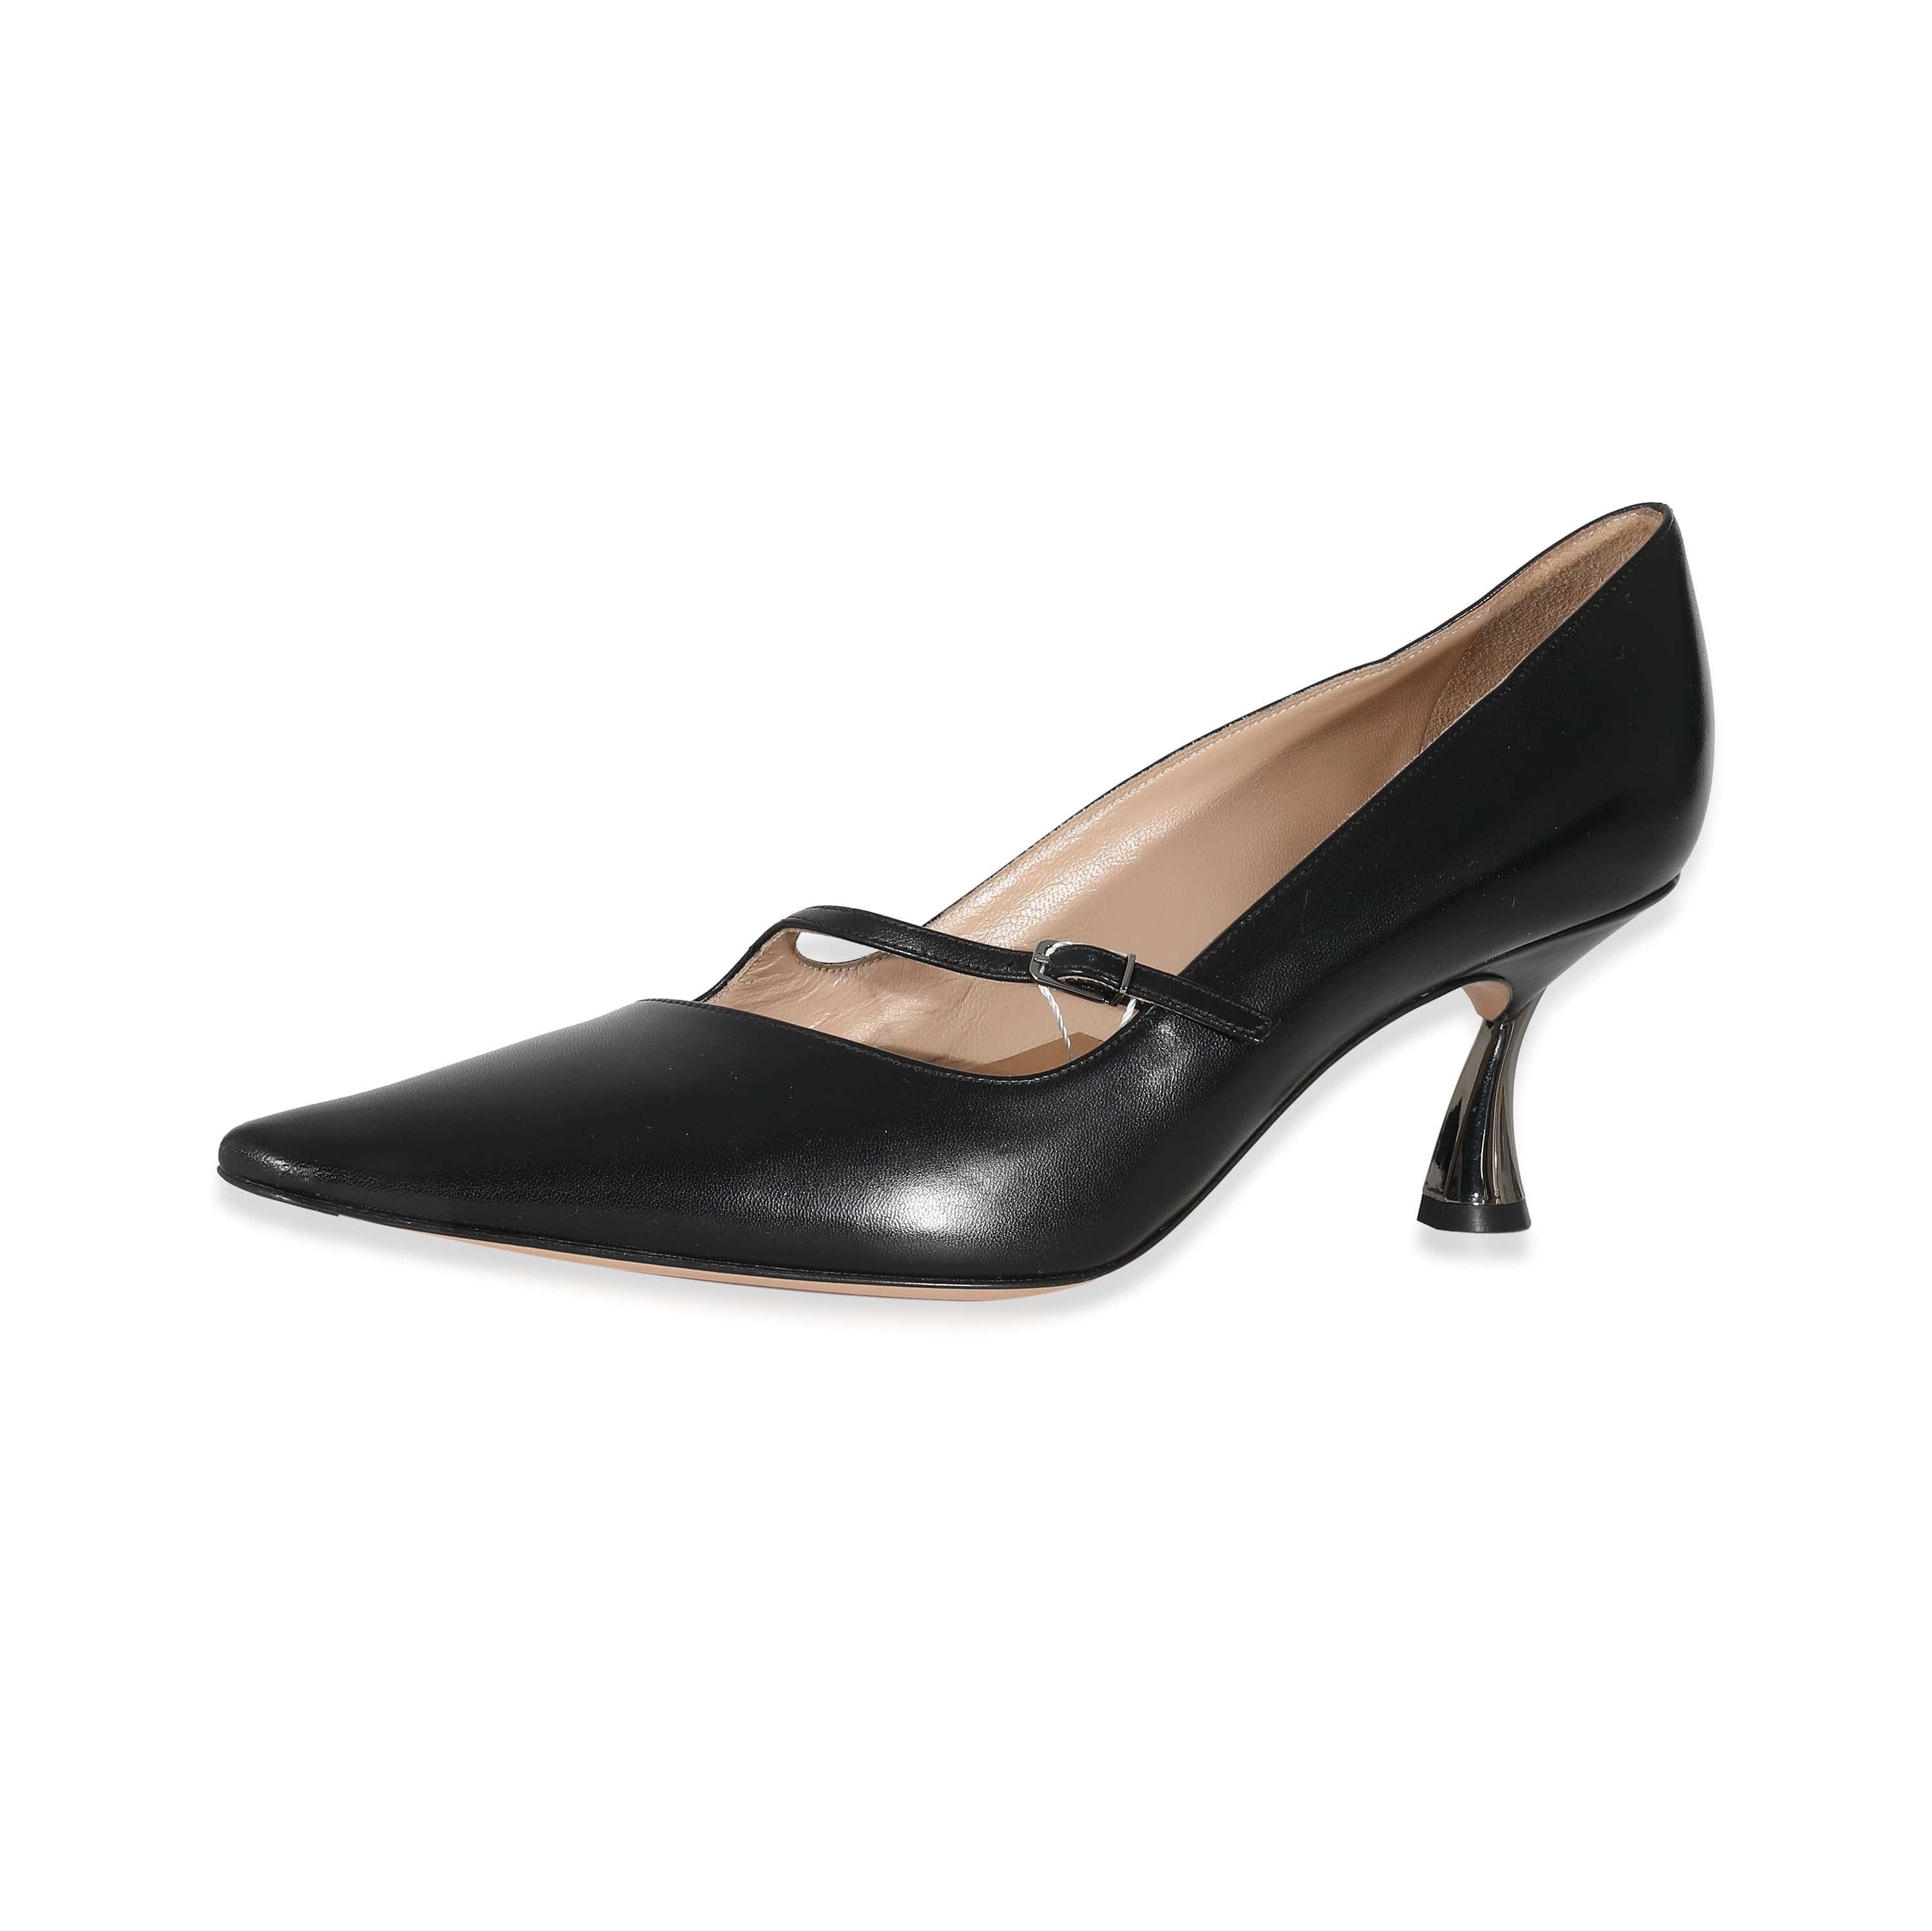 Casadei Casadei Black Patent Kitten Heels Size 39 AGL2515